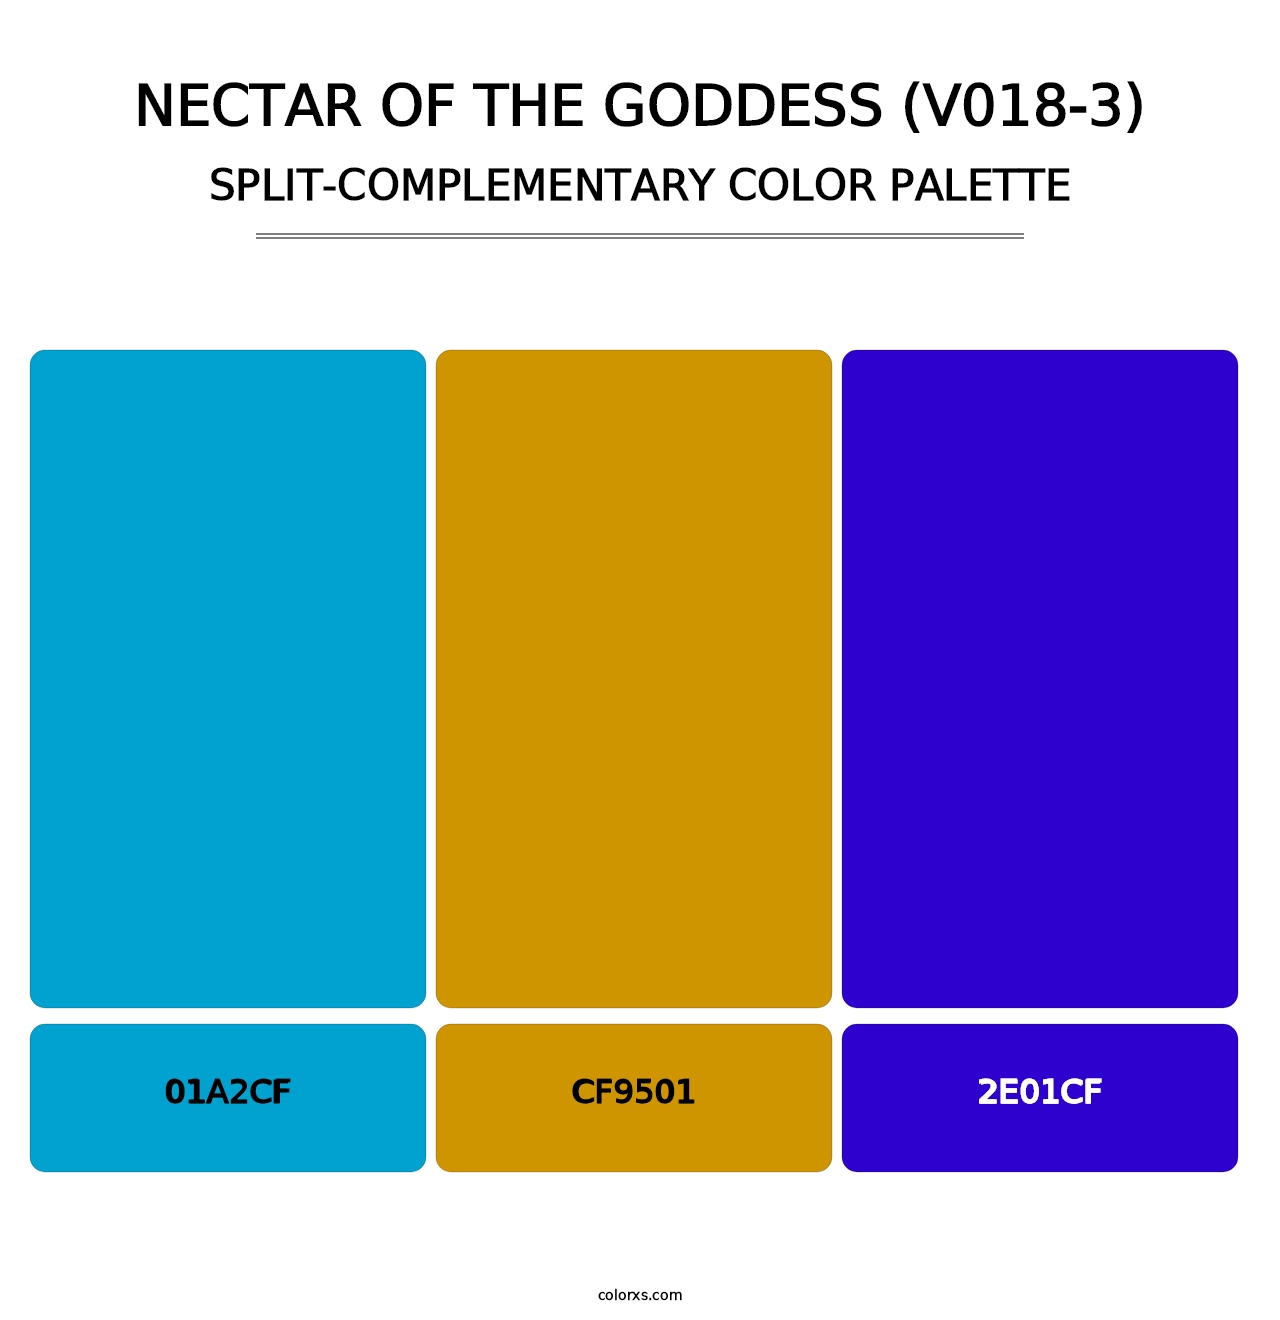 Nectar of the Goddess (V018-3) - Split-Complementary Color Palette